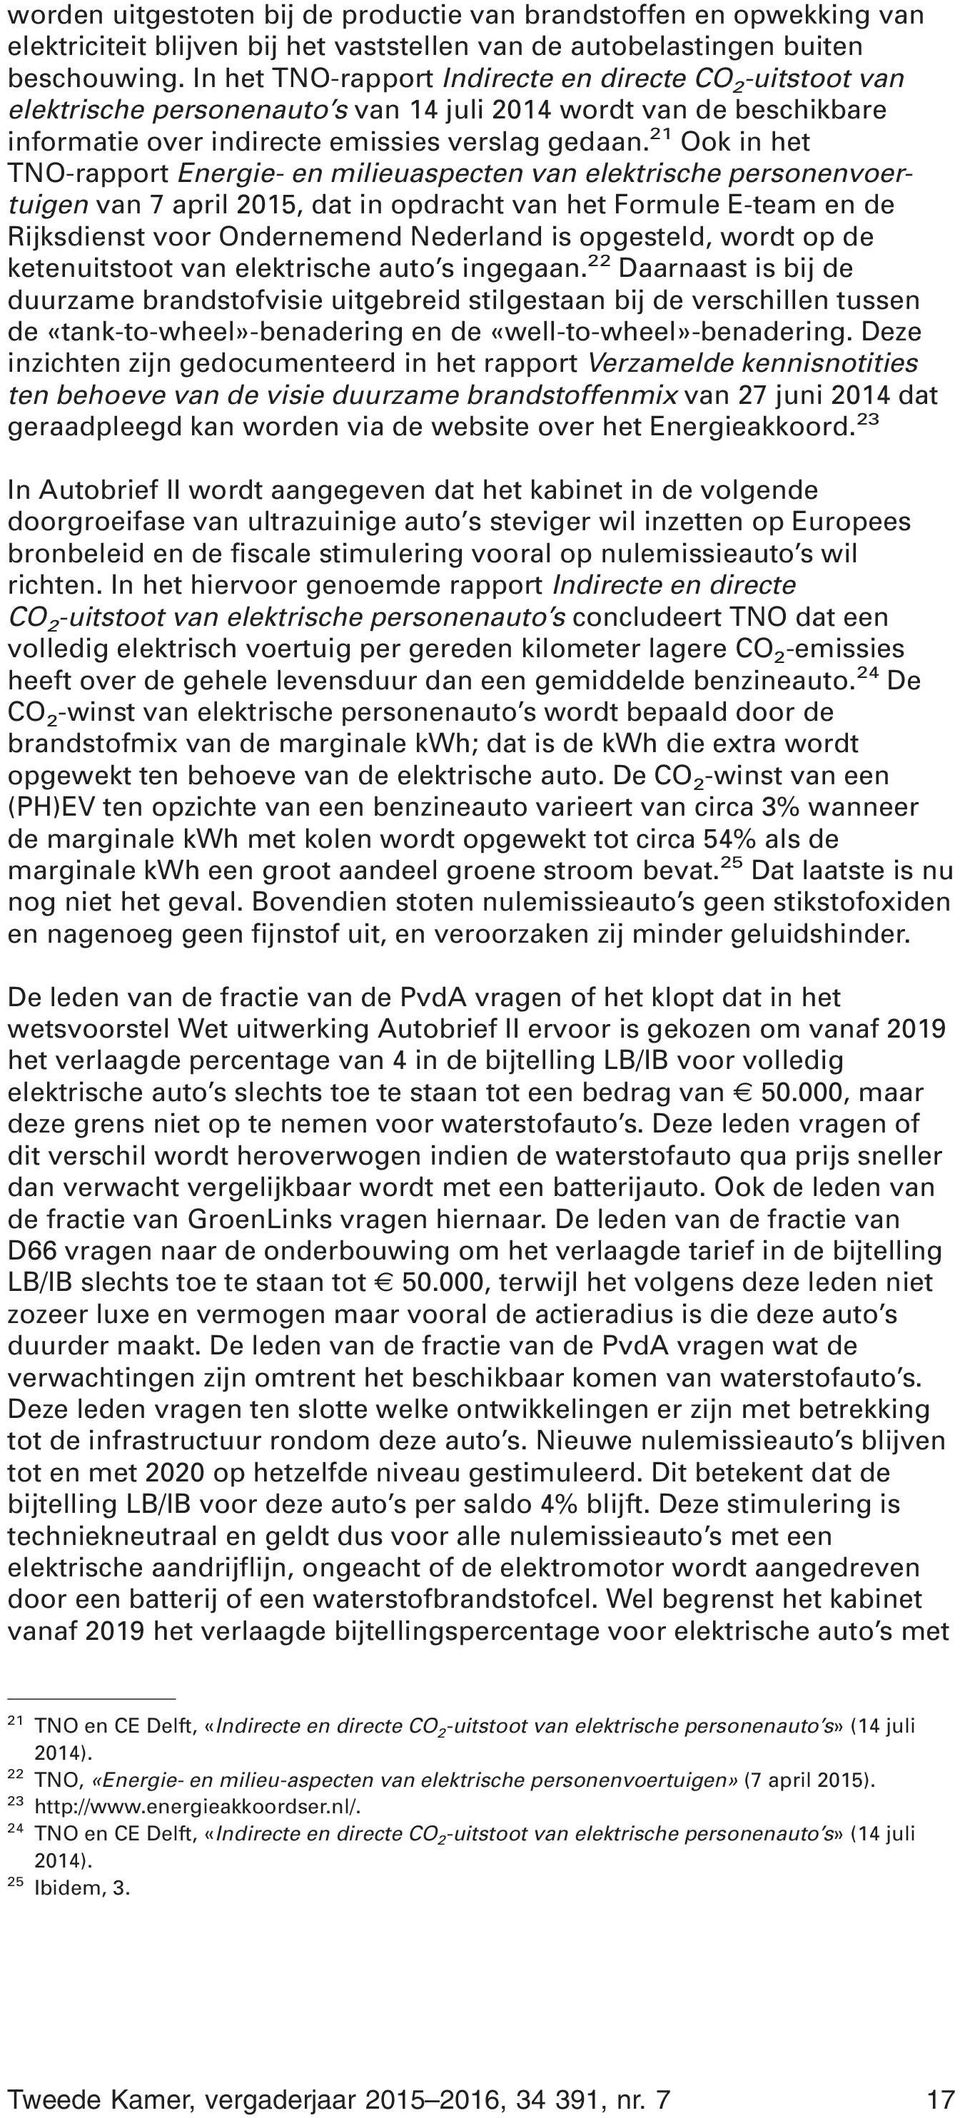 21 Ook in het TNO-rapport Energie- en milieuaspecten van elektrische personenvoertuigen van 7 april 2015, dat in opdracht van het Formule E-team en de Rijksdienst voor Ondernemend Nederland is